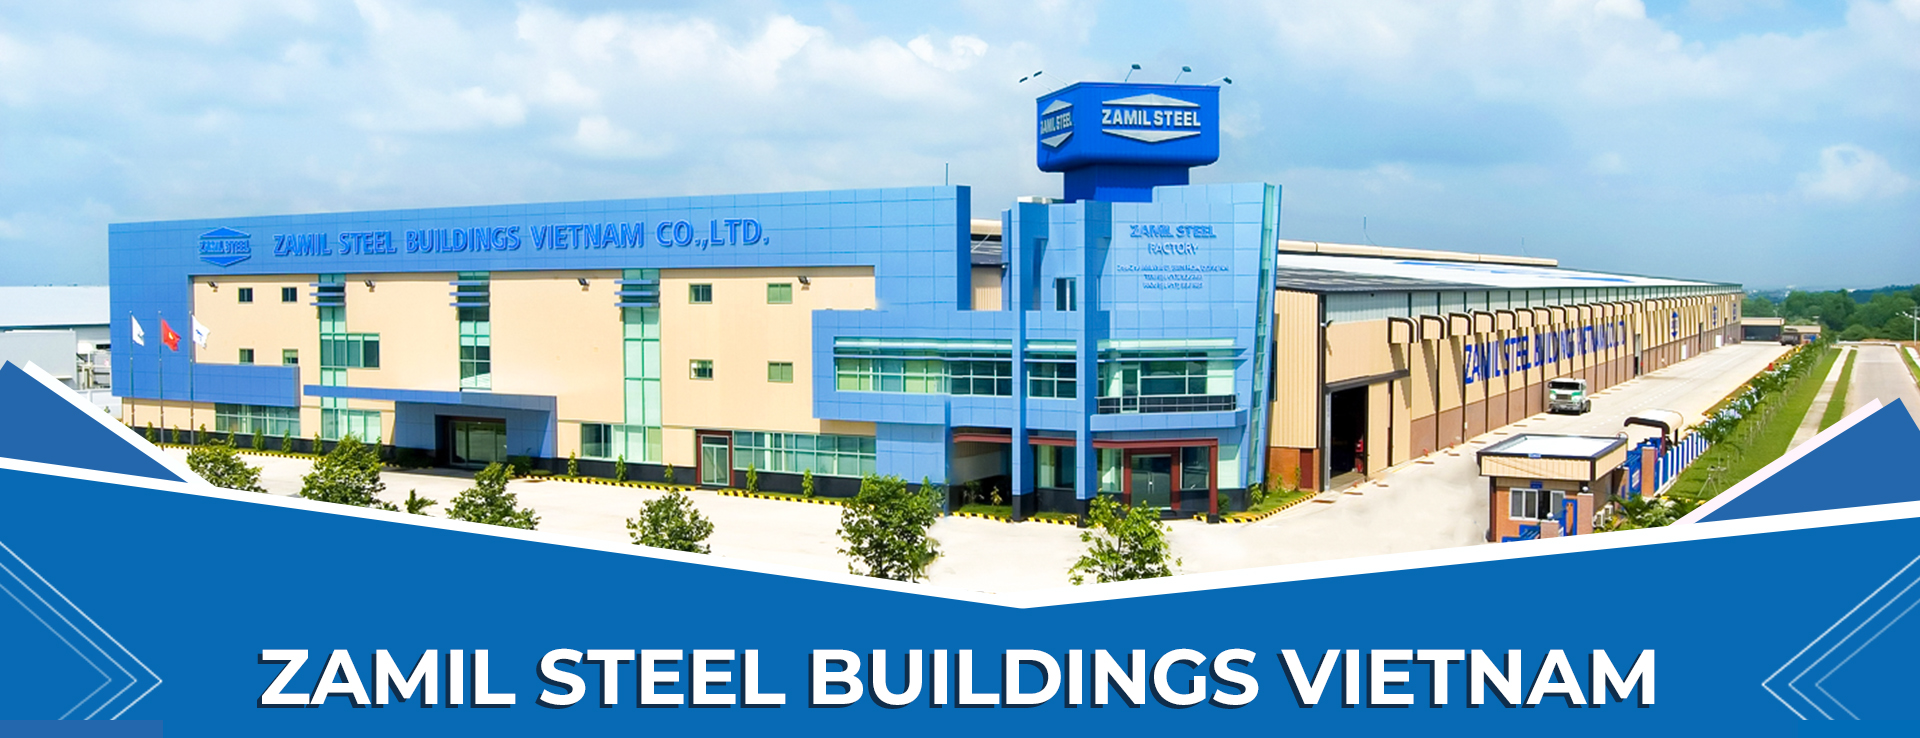 Kết cấu thép Zamil Steel Buildings Vietnam: Kết cấu thép Zamil Steel Buildings Vietnam là một trong những sản phẩm vượt trội nhất của chúng tôi. Với chất lượng tốt và được sản xuất theo quy trình chuyên nghiệp, chúng tôi tự tin đem đến cho khách hàng của mình sản phẩm tốt nhất với giá cả hợp lý.